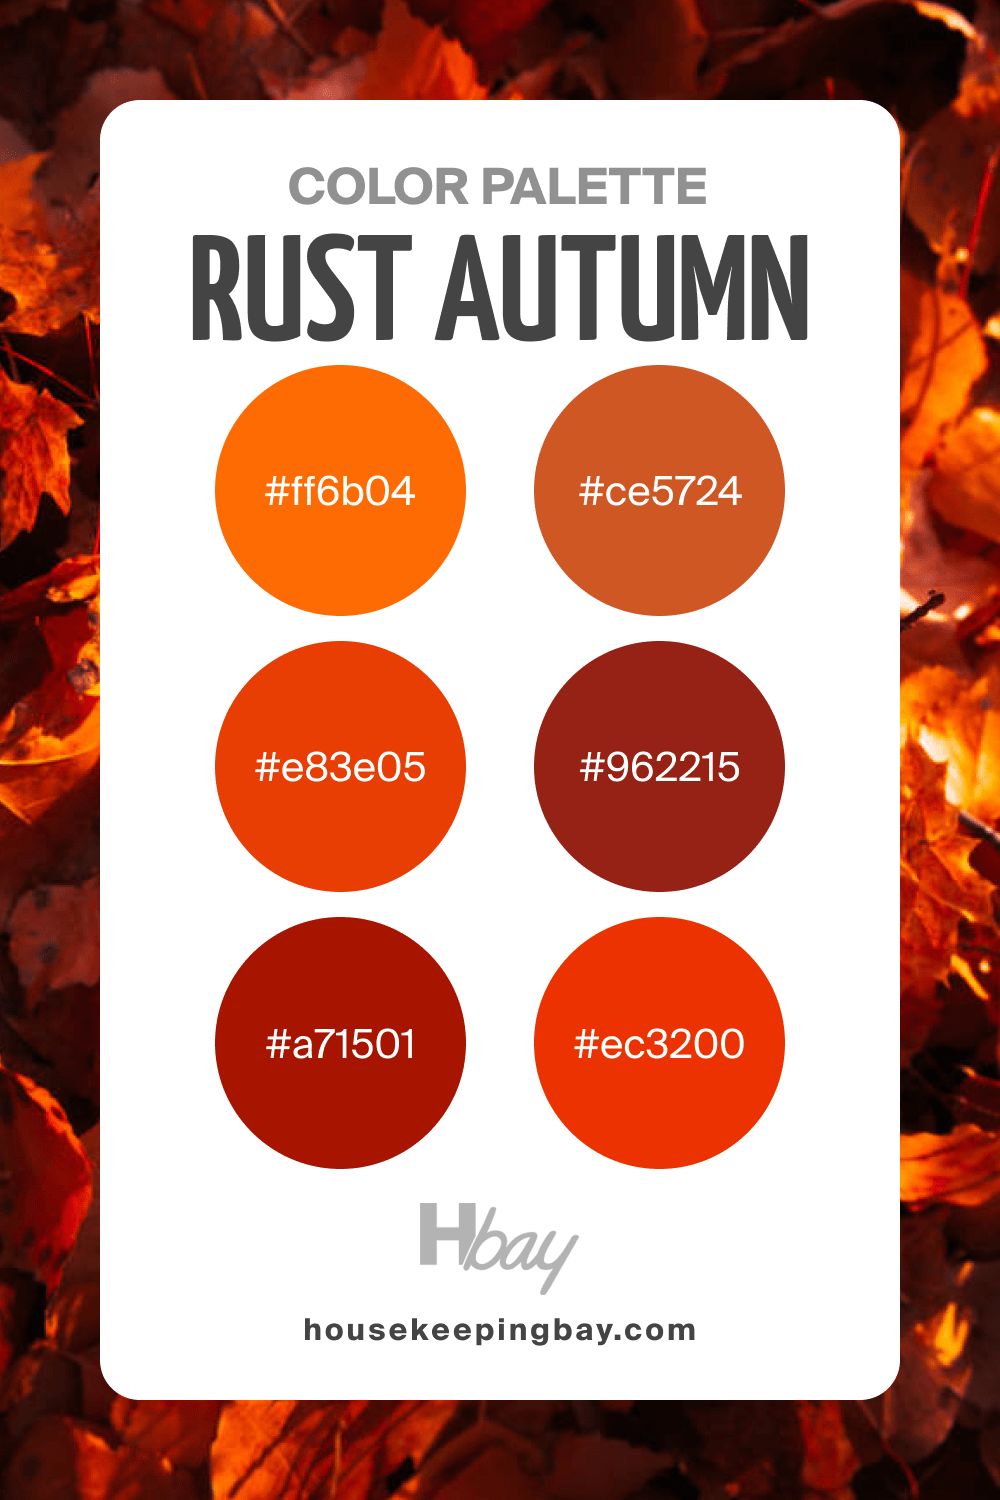 Autumn color palette rust